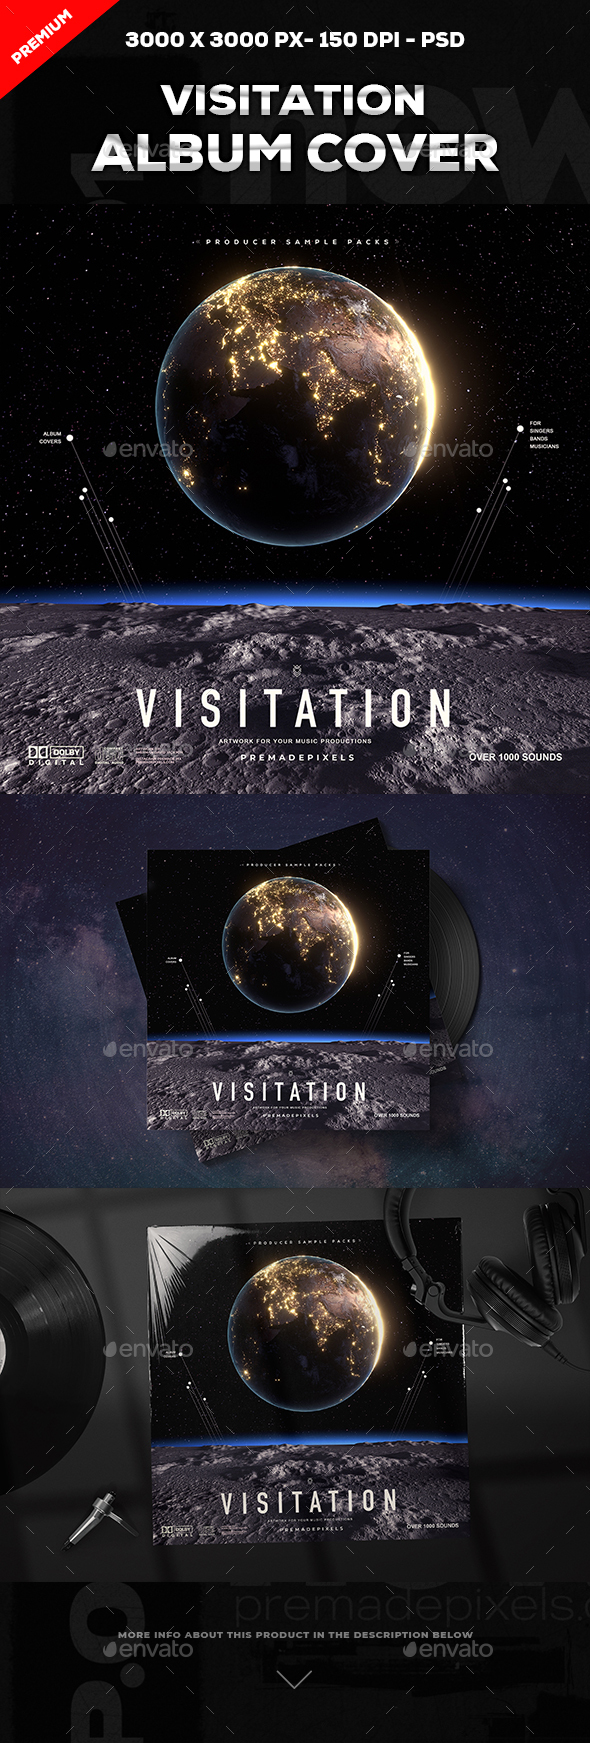 [DOWNLOAD]Visitation Album Cover